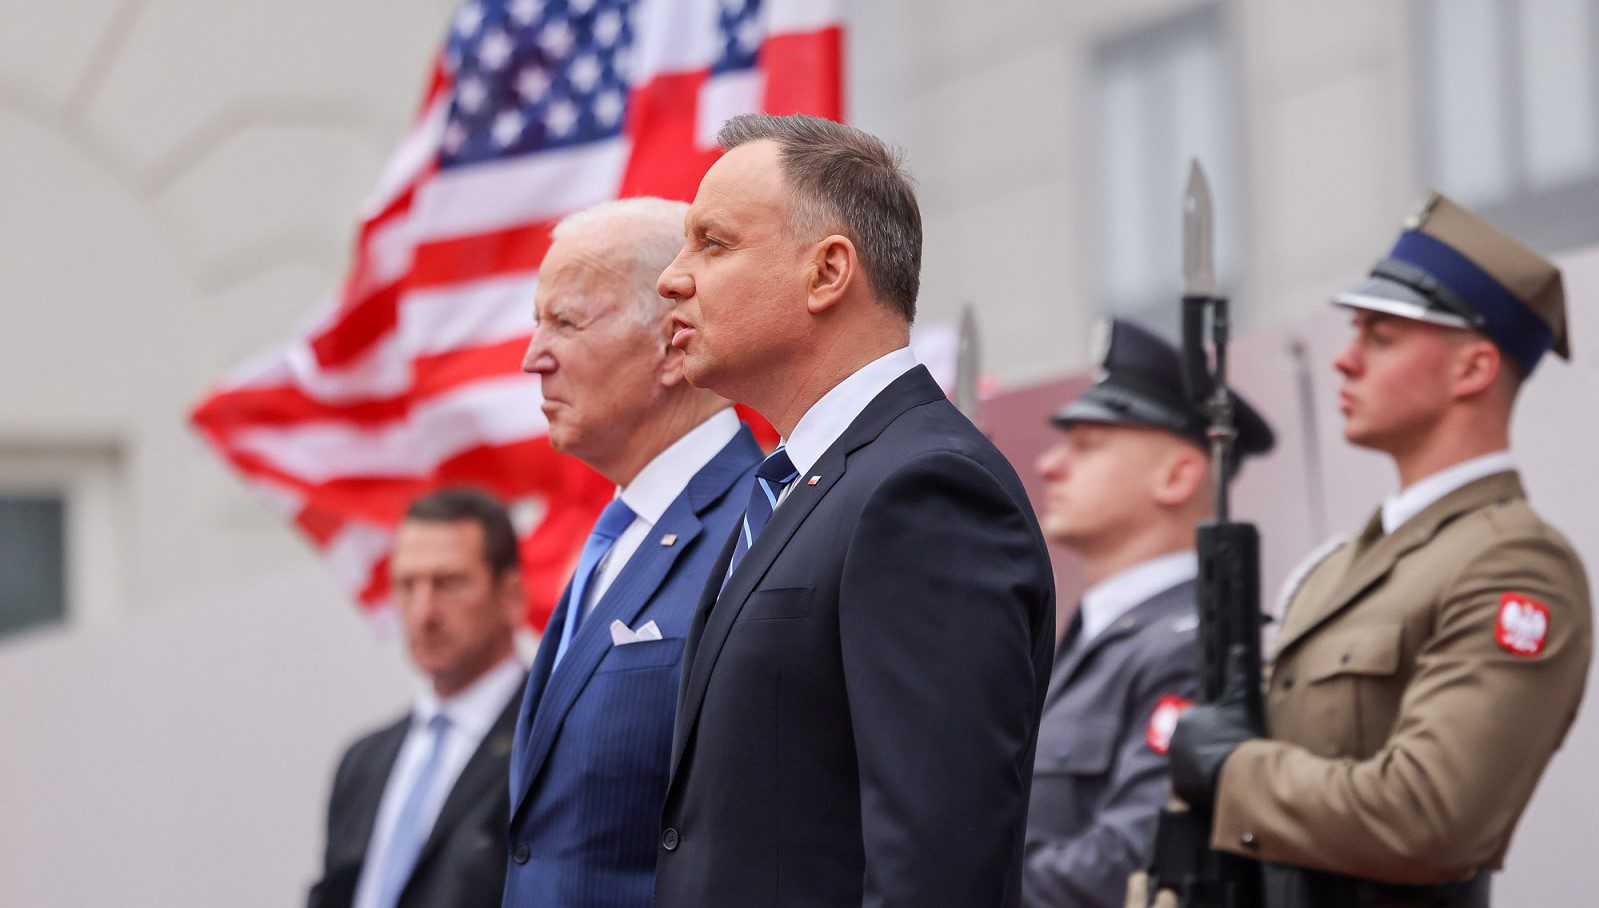 SHBA i ofron Polonisë kredi të rrallë prej 2 miliardë dollarësh për të modernizuar ushtrinë e saj